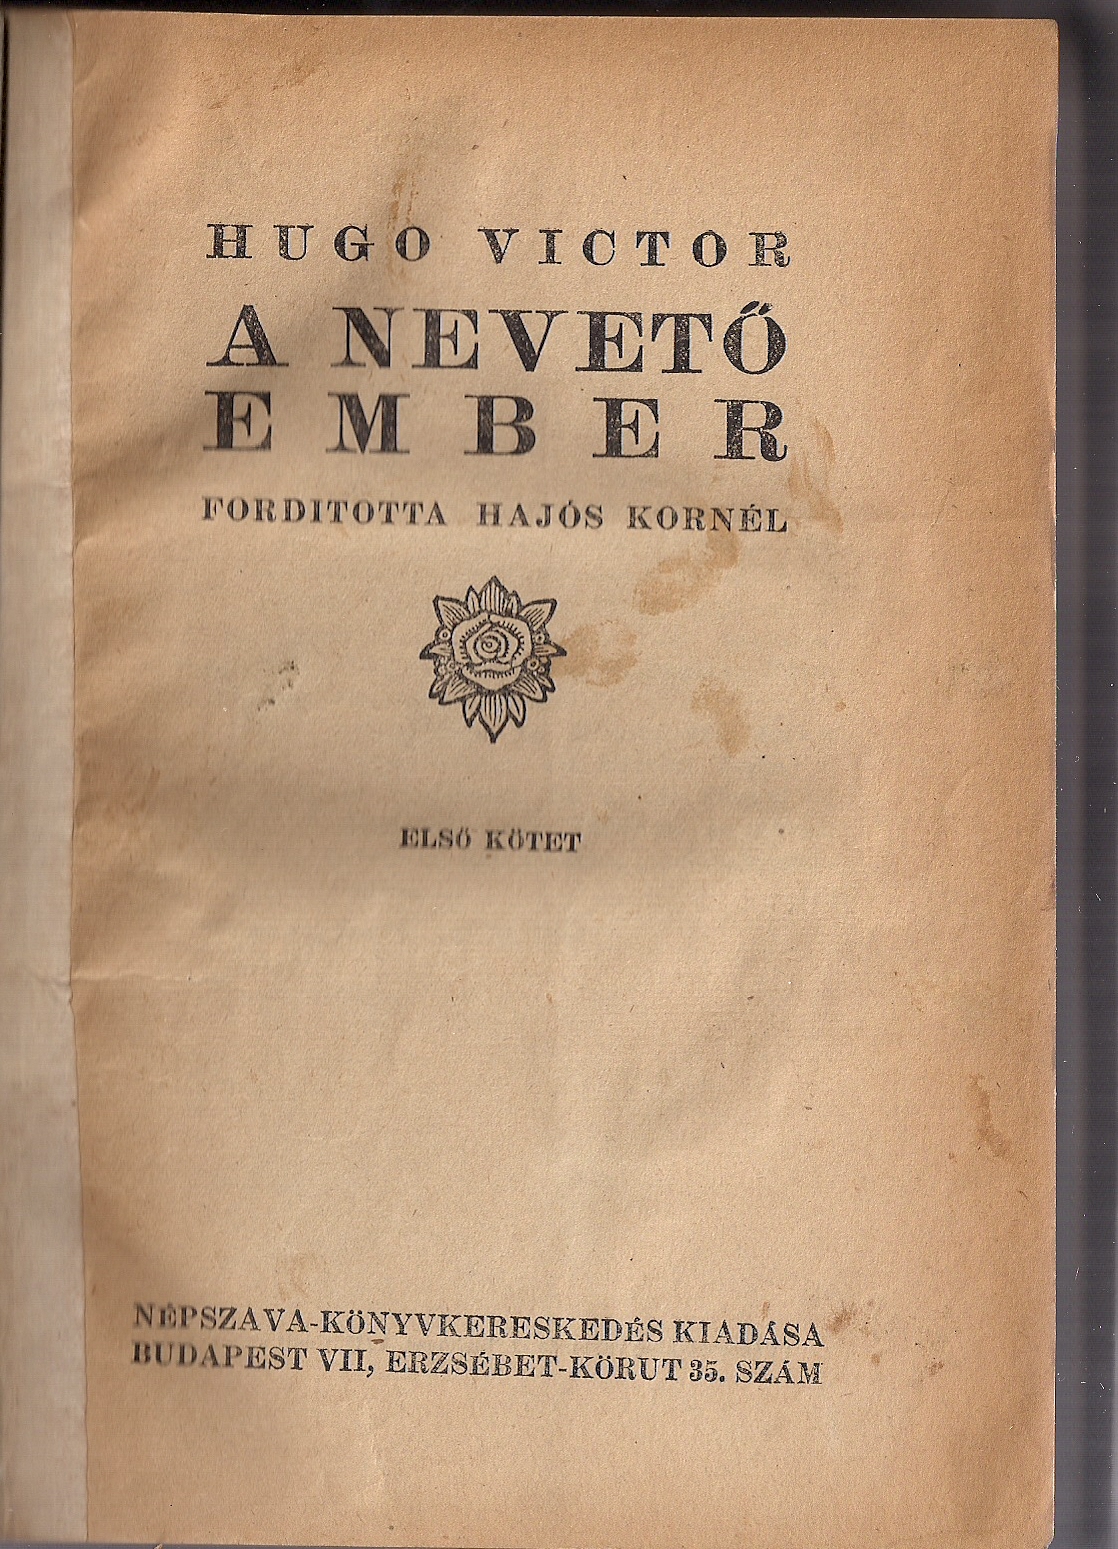 Victor Hugo - A nevető ember 1. oldal.jpg